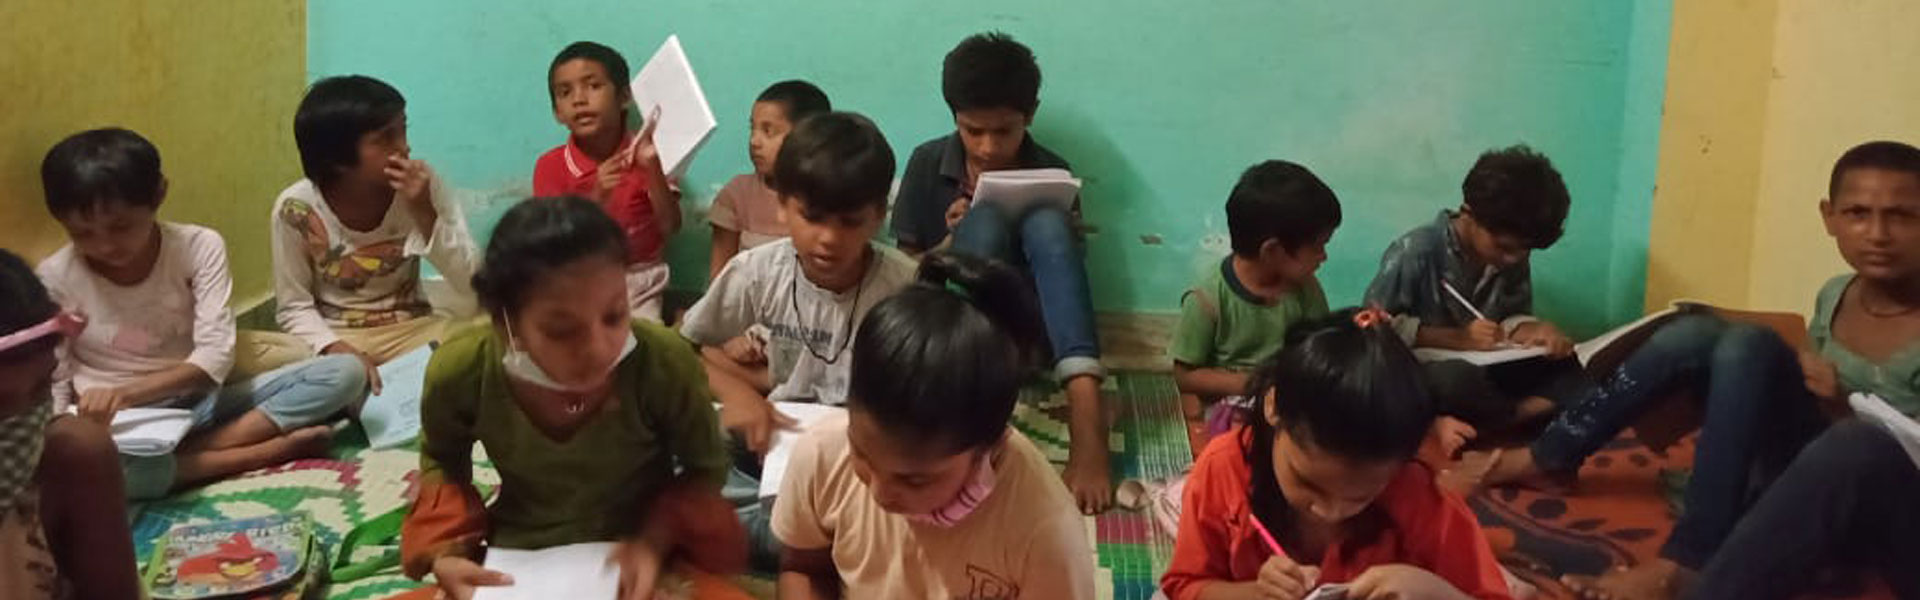 Children in Literacy Program